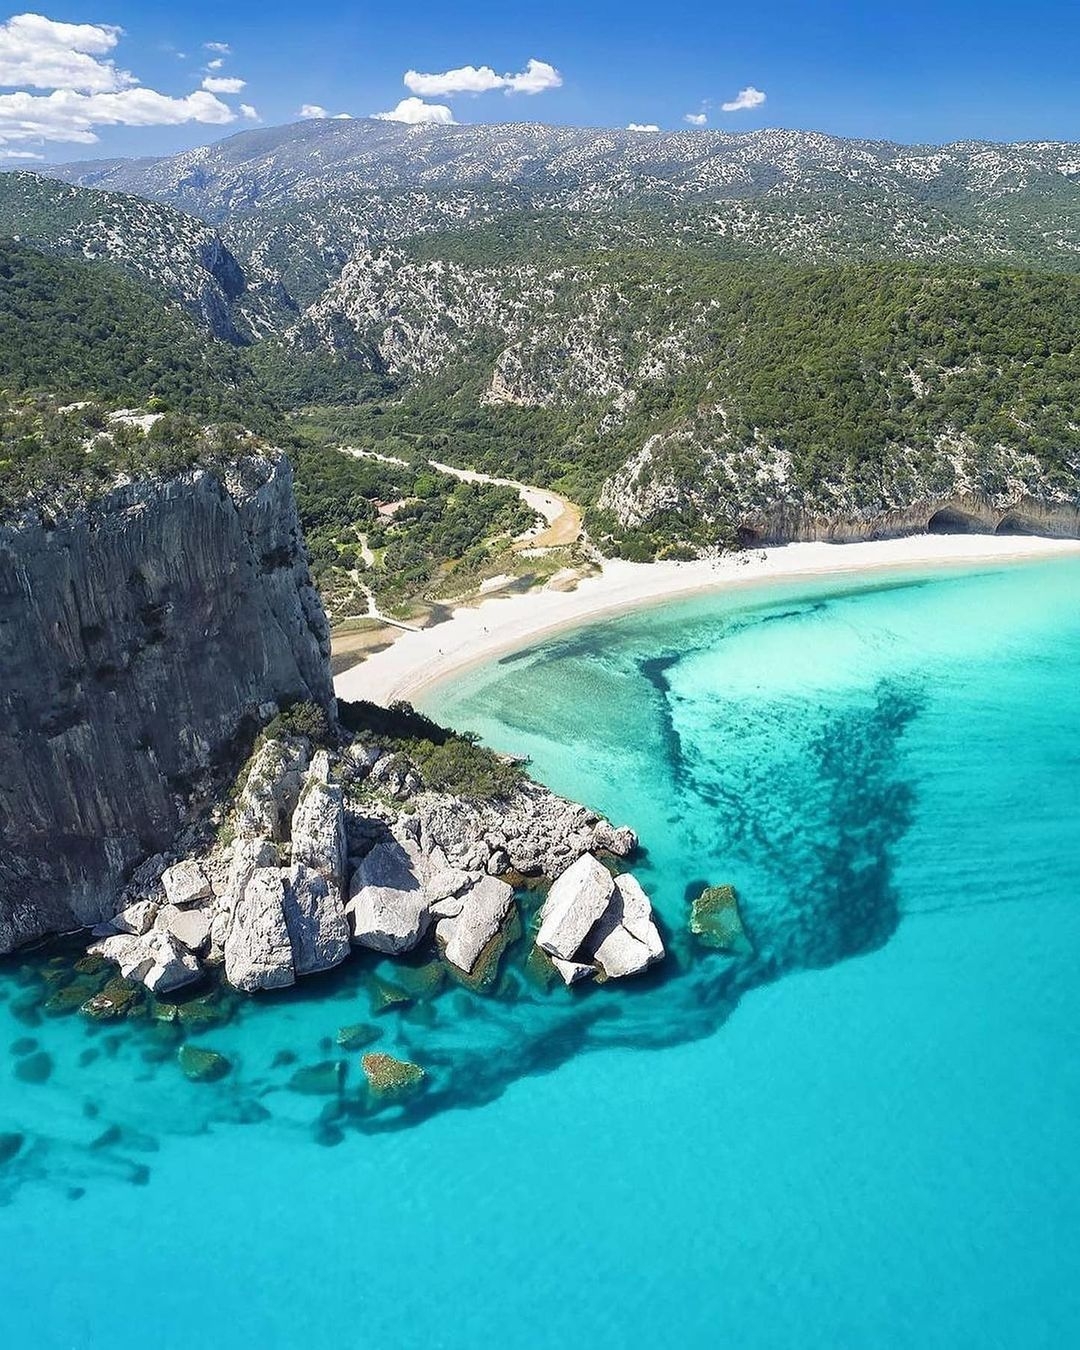 意大利撒丁岛:全球最美潜水胜地之一